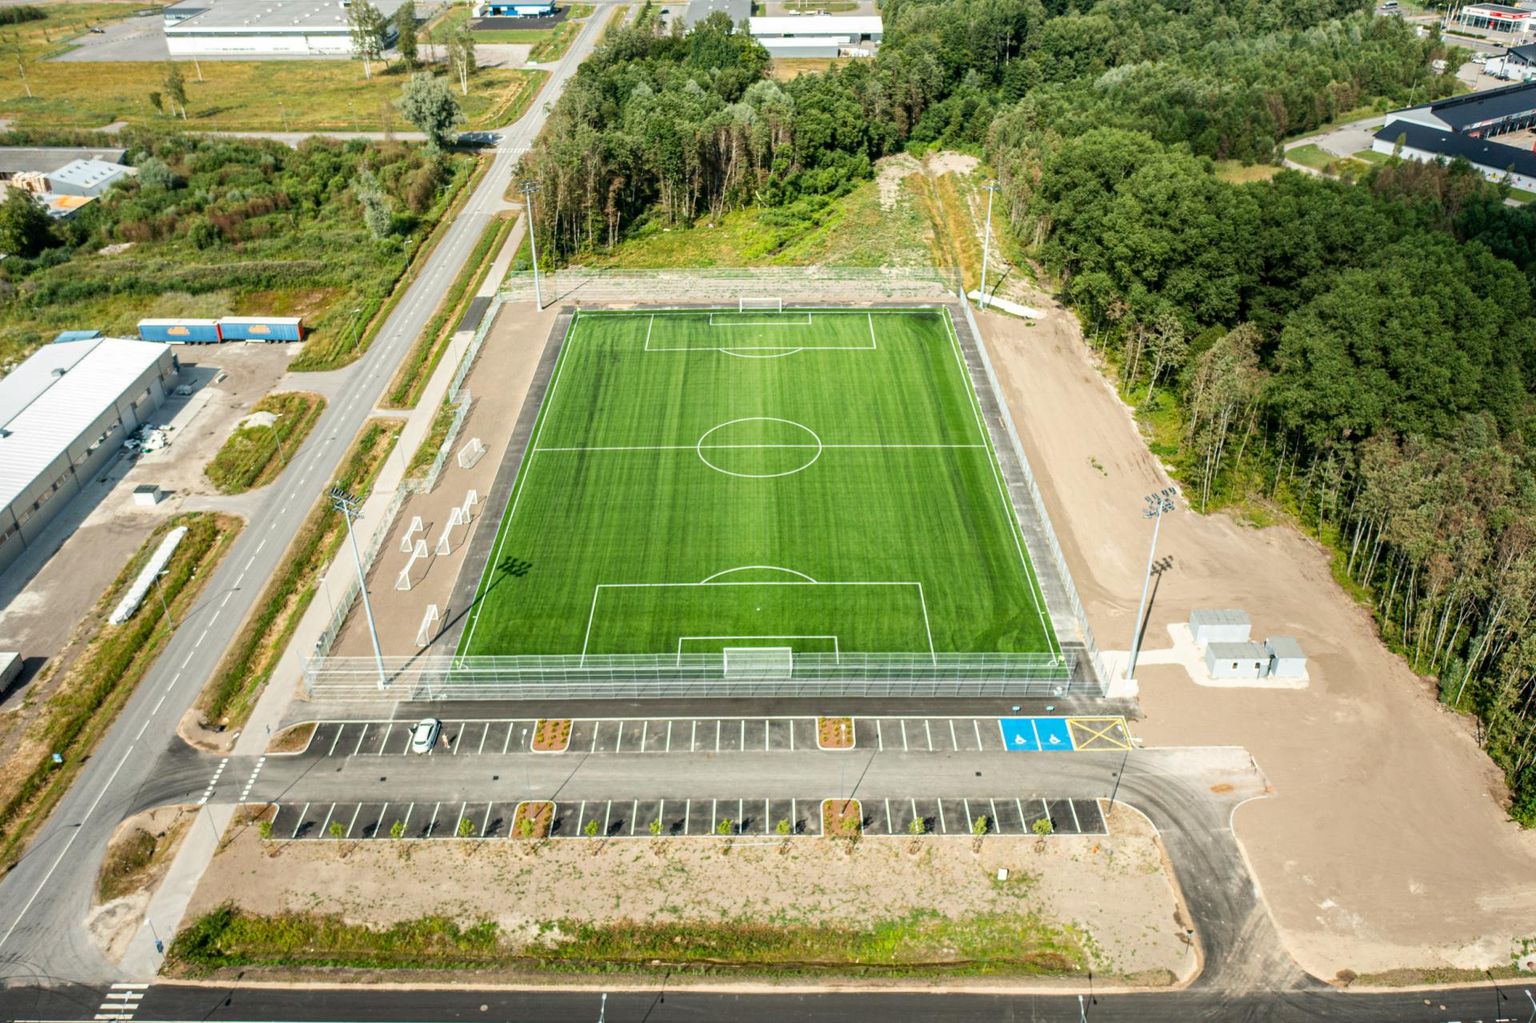 Uus spordihoone tuleb pildil olevast Rehepapi 3 jalgpalliväljakust diagonaalis ülalpool olevasse metsatukka. Jalgpallistaadionist paremale tuleb uus jalgpallihall.